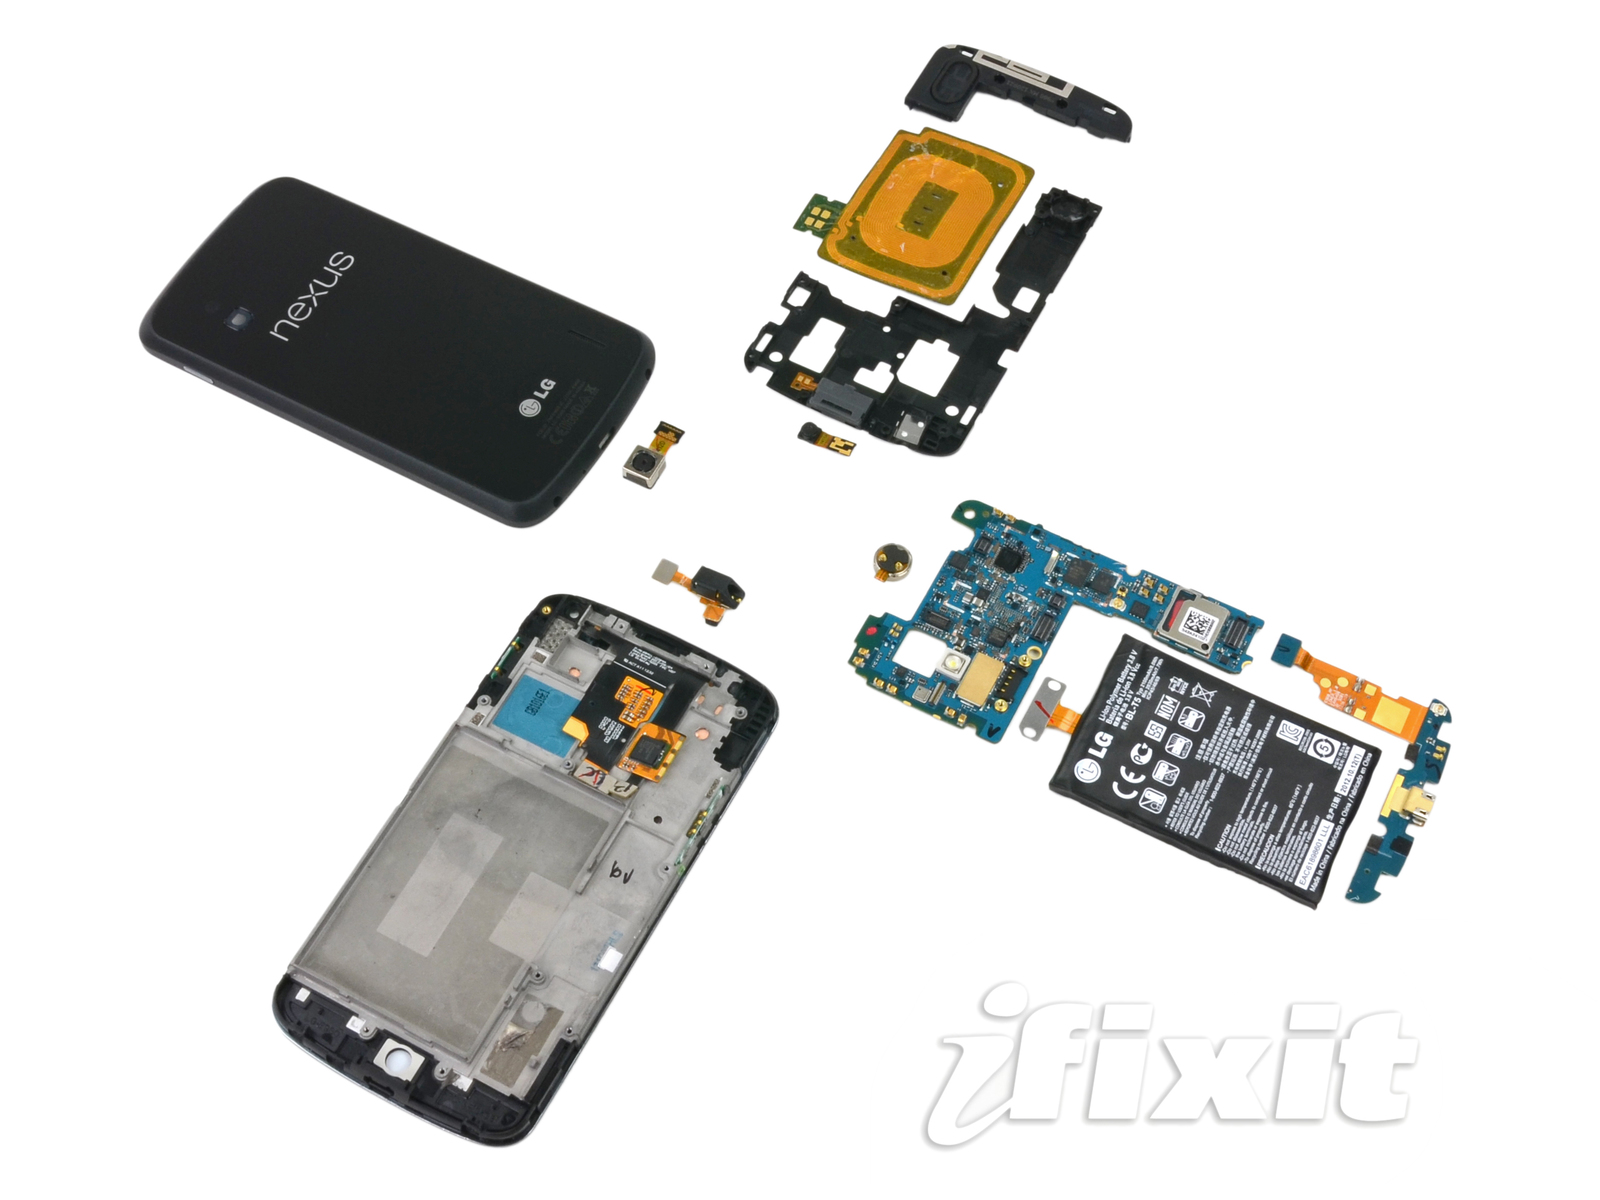 Первые запасы смартфона LG Nexus 4 были распроданы за считанные минуты